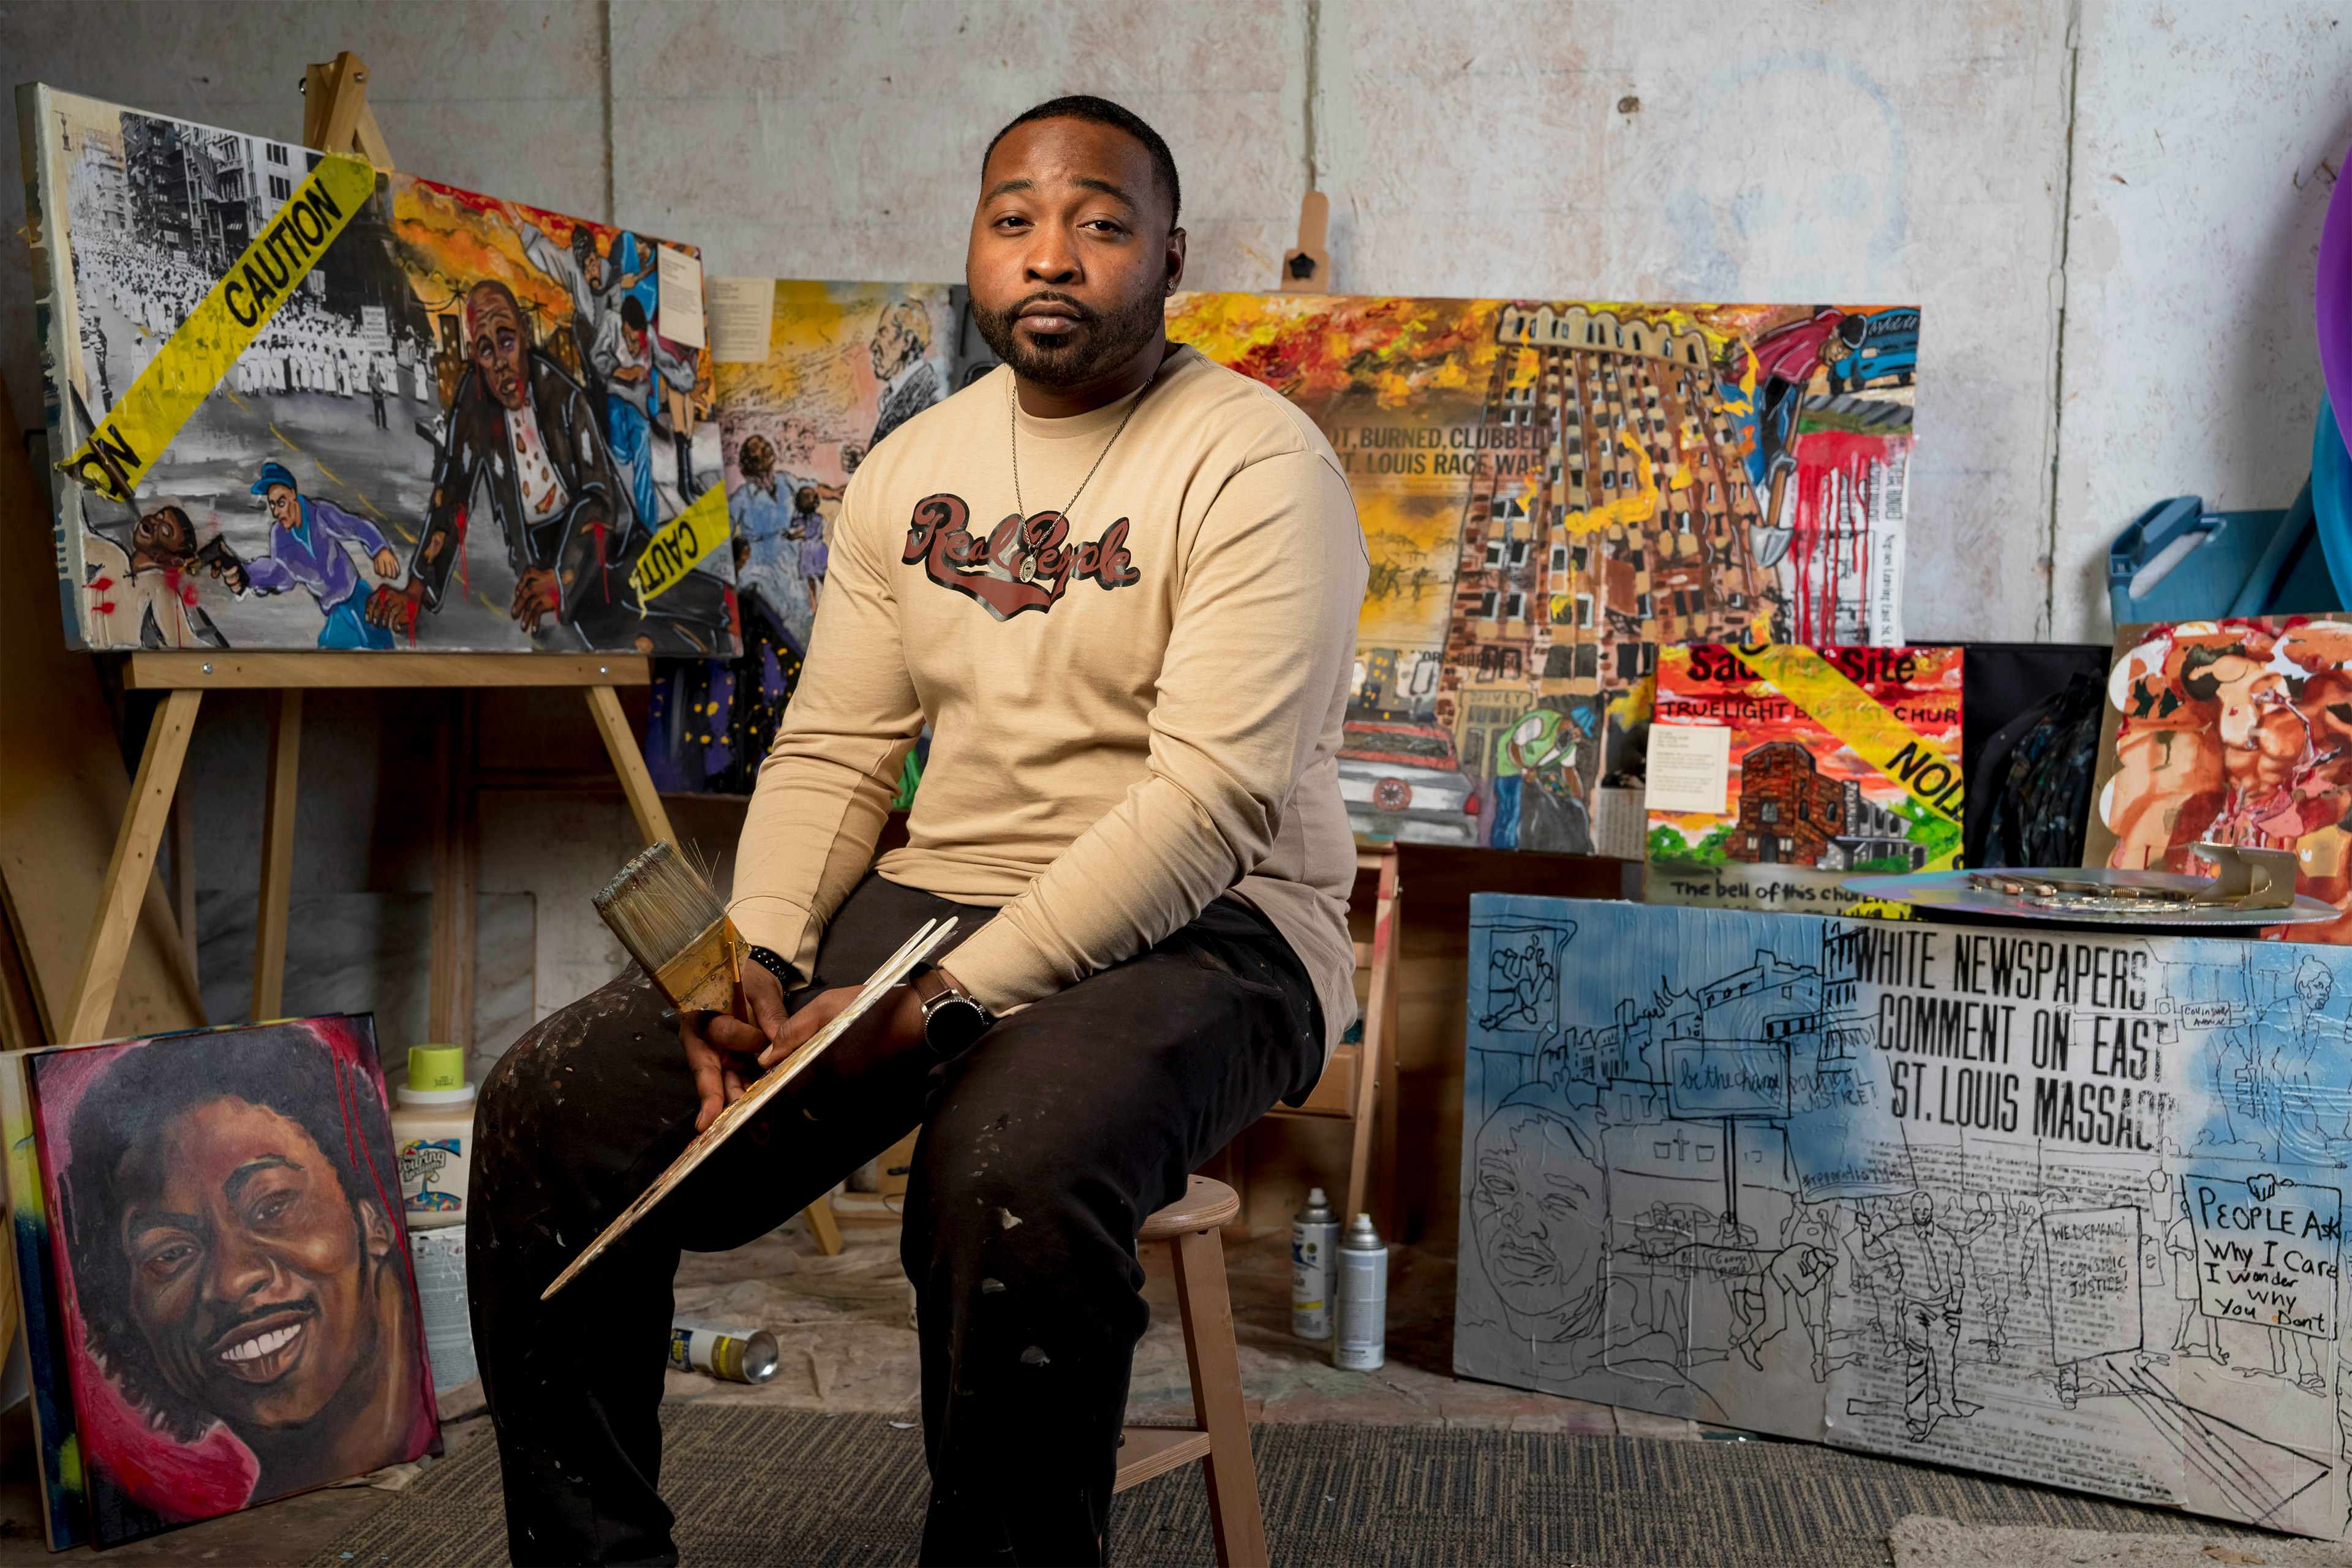 Para combatir la violencia con armas de fuego, artista convierte las balas en arte